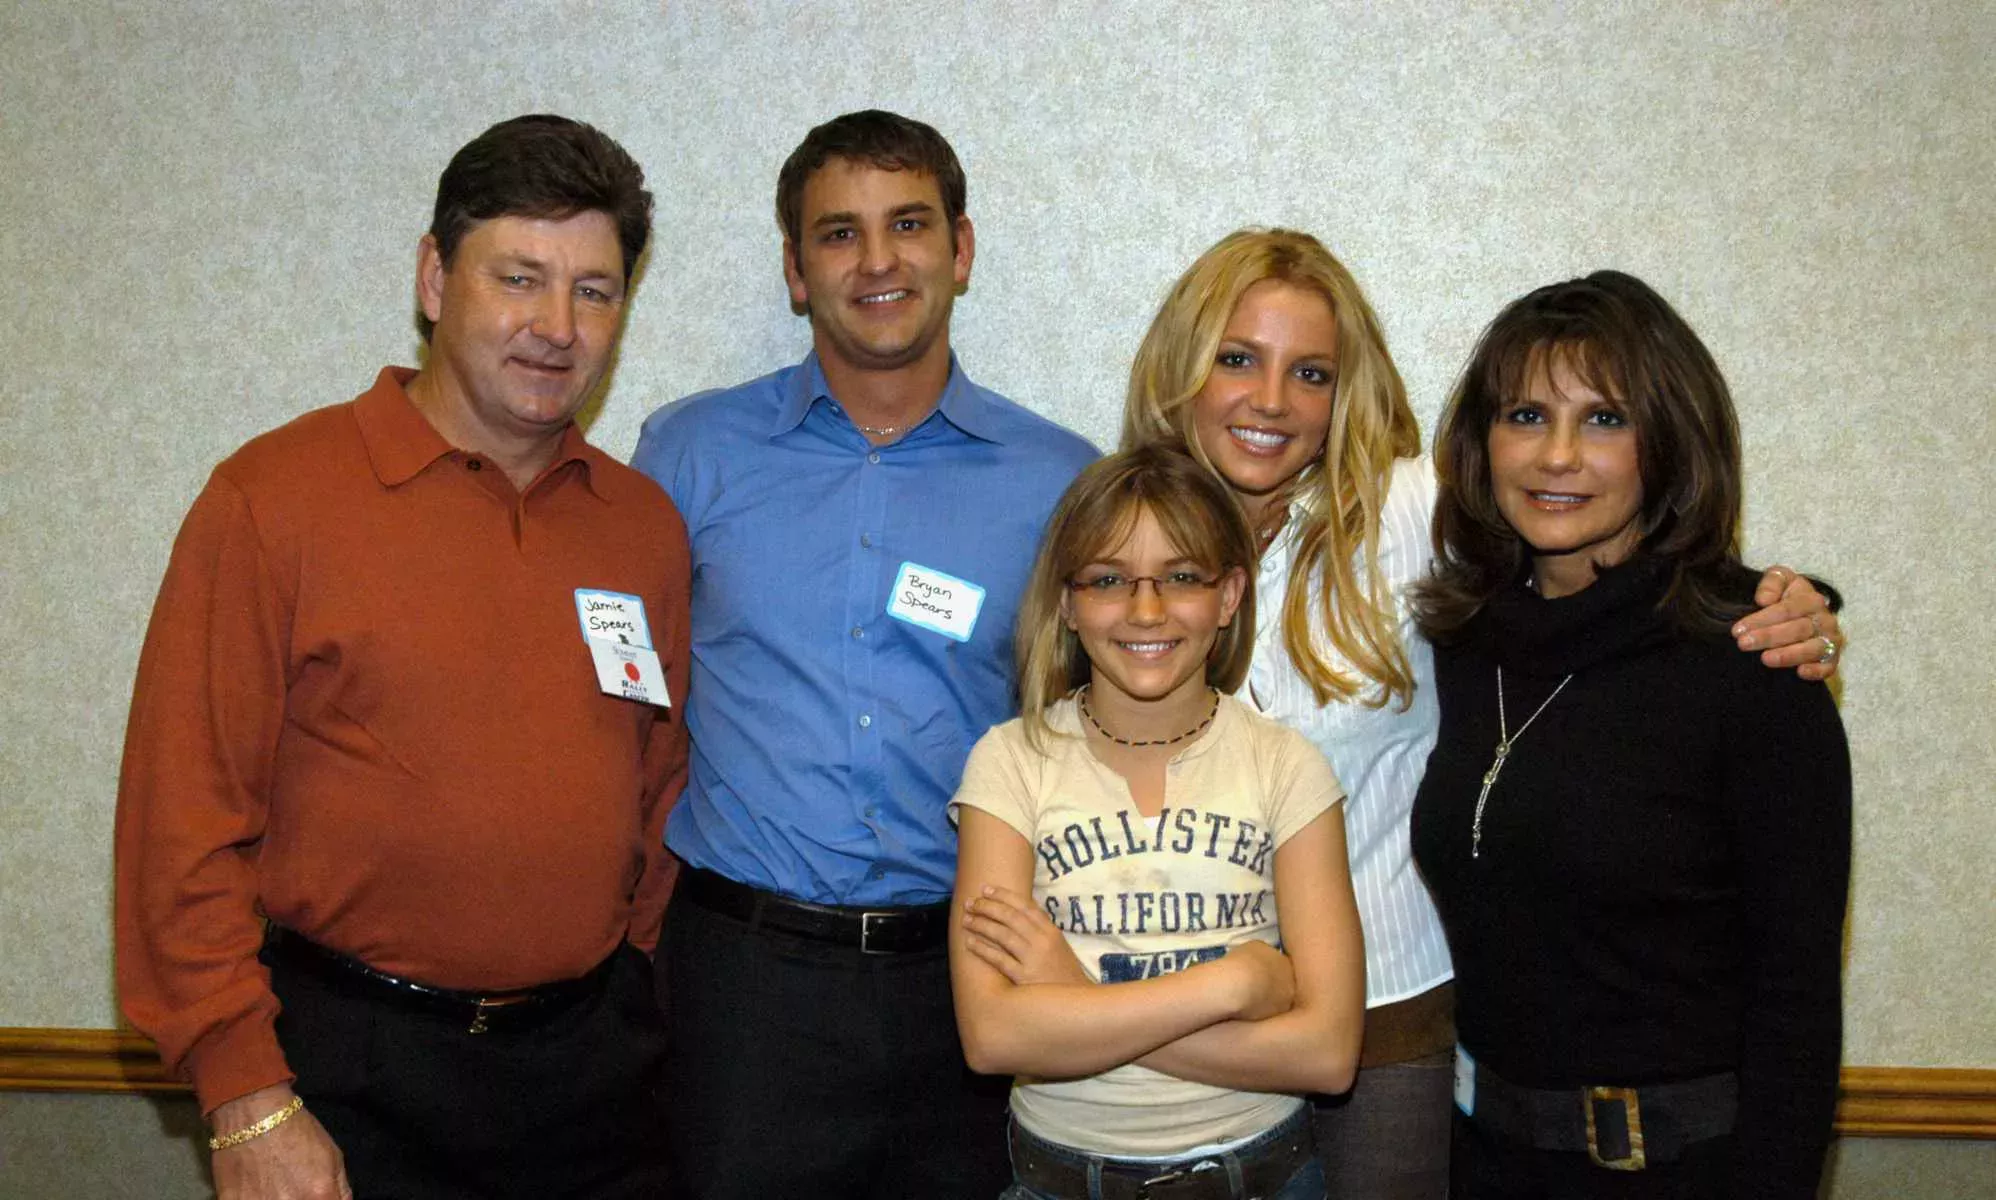 El padre de Britney Spears hace un patético intento de justificar su tutela: 'Yo marqué la diferencia'